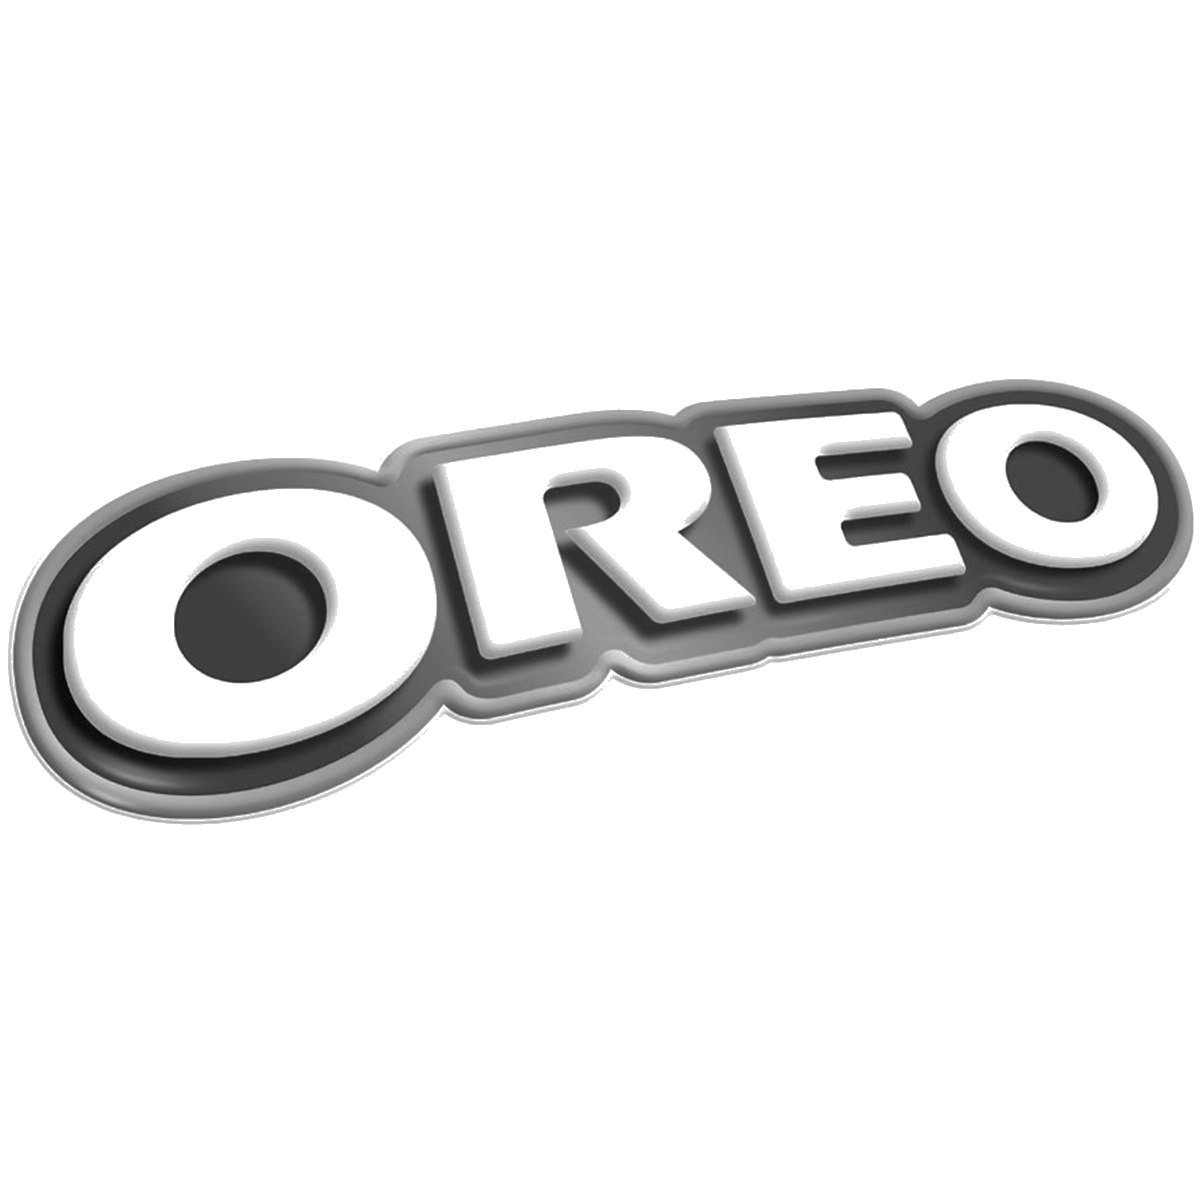 Oreo_logo.png